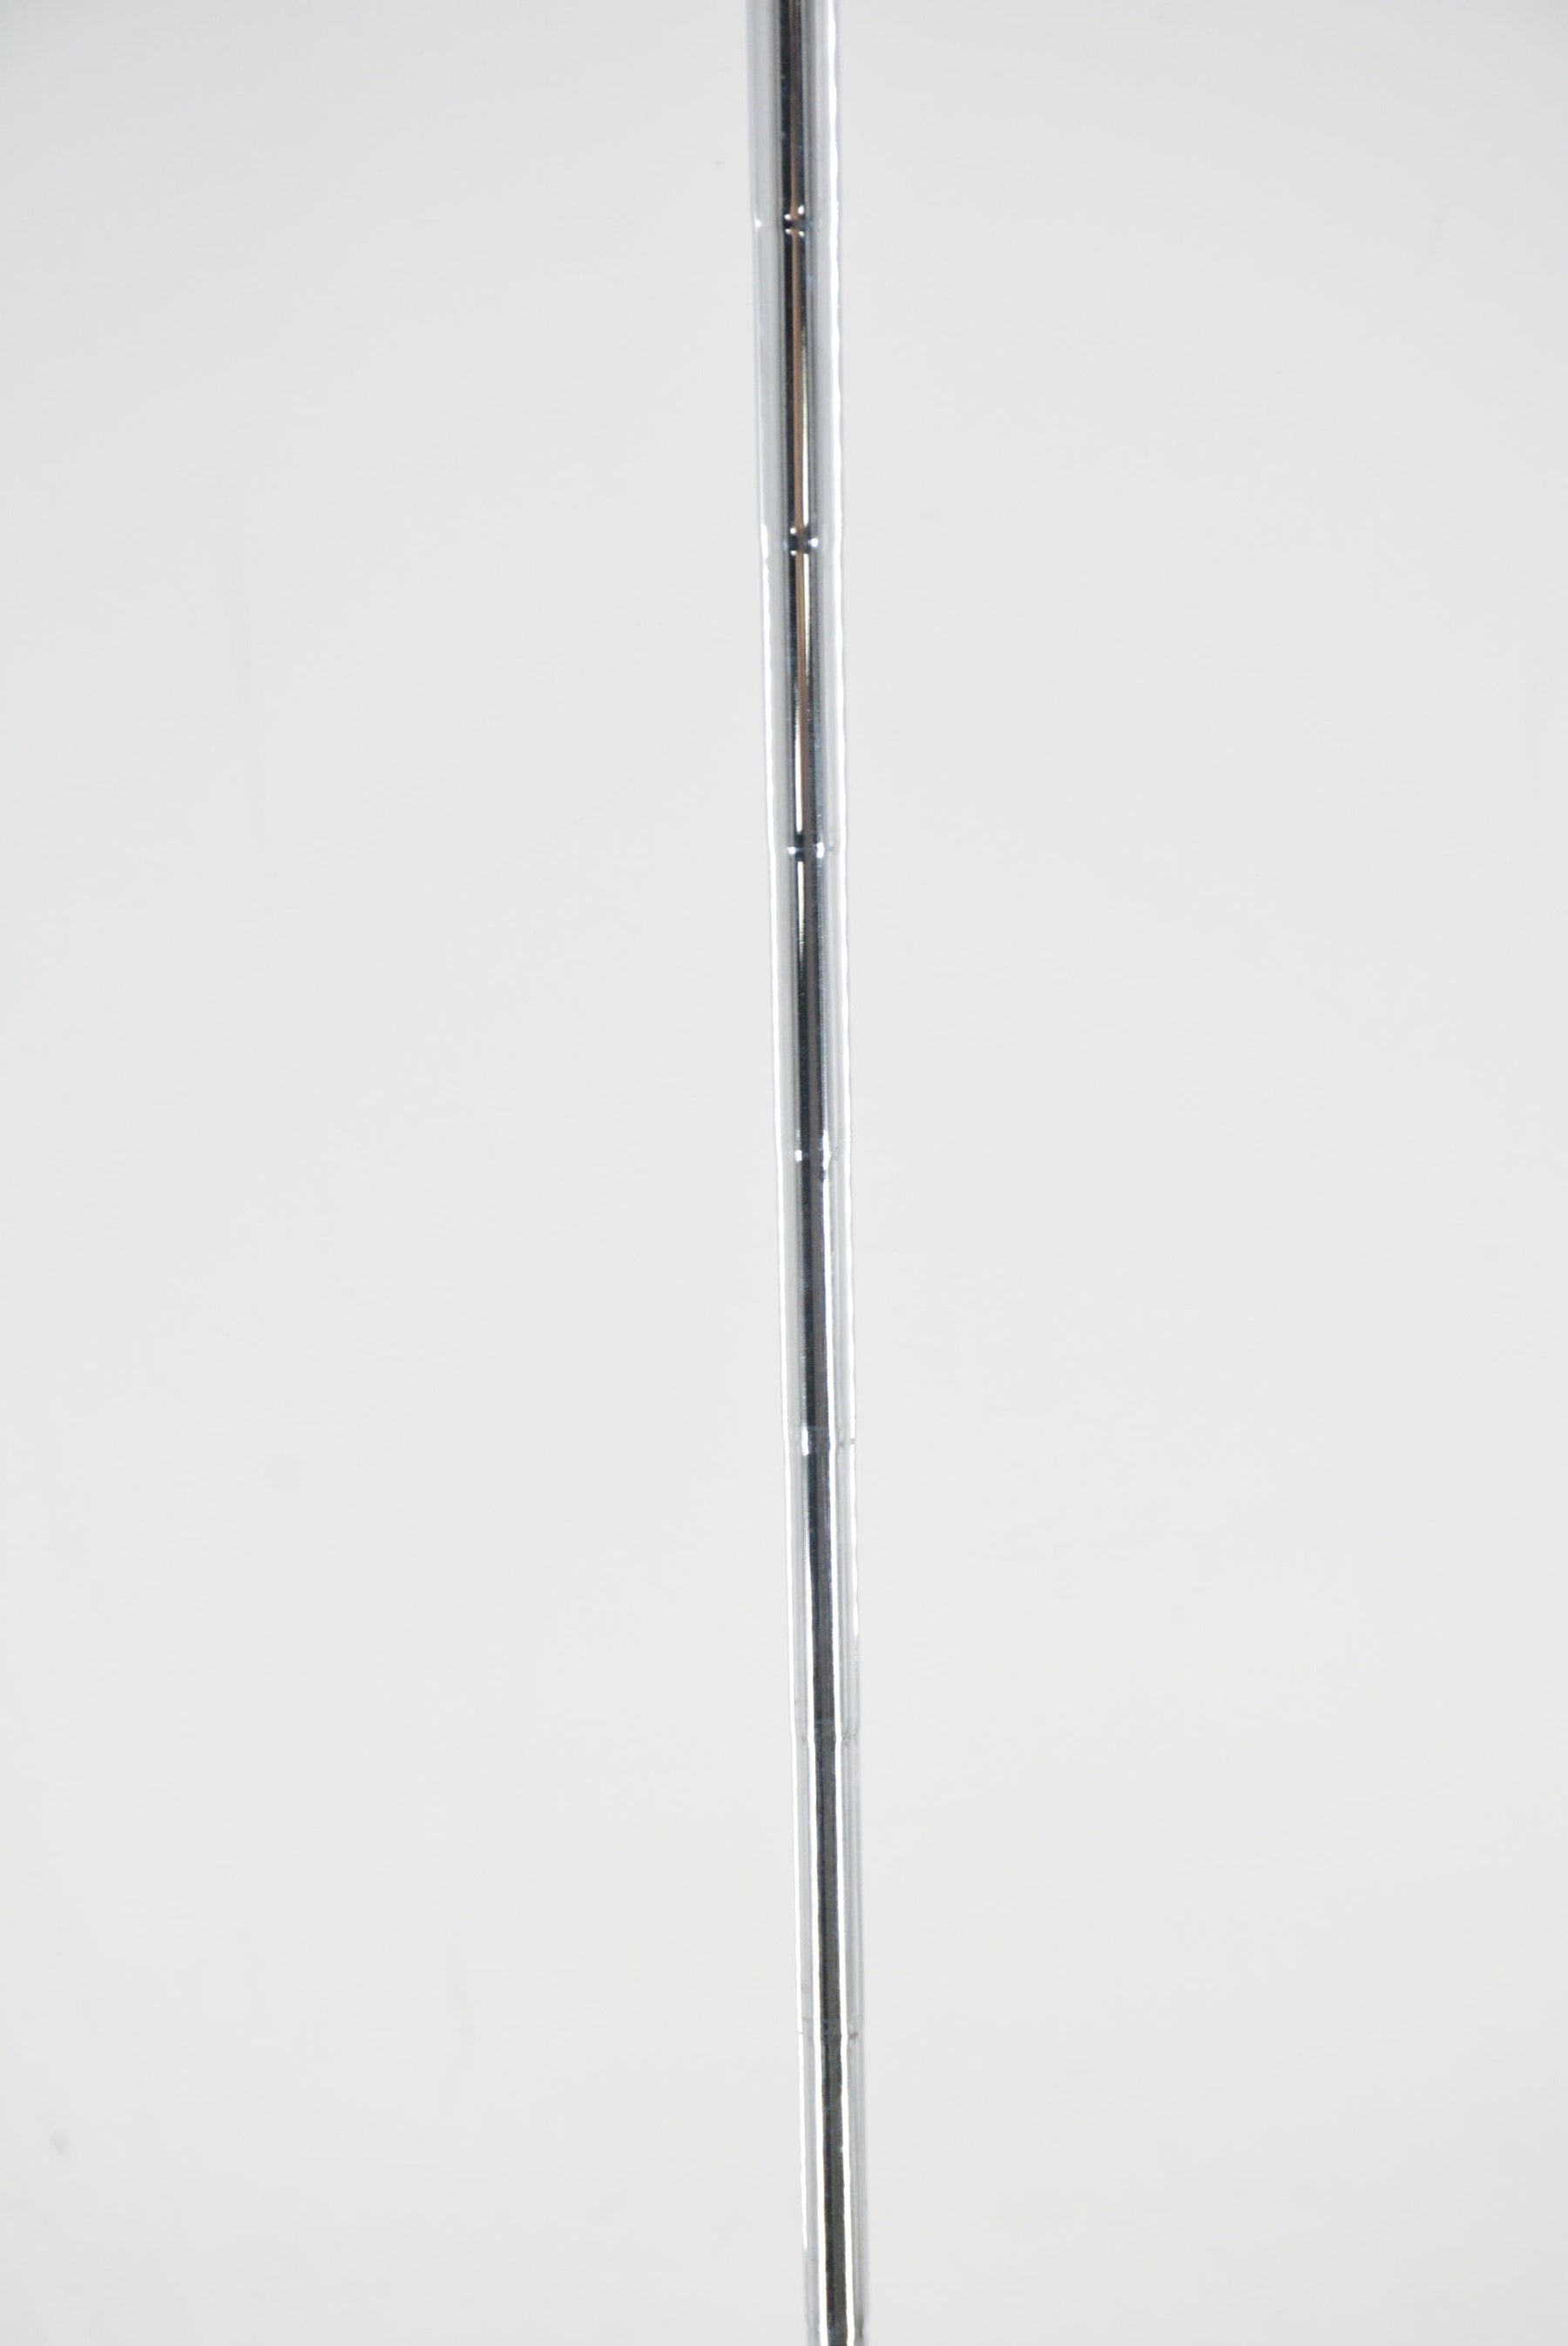 Ping G25 6-UW Iron Set S Flex +.75" Golf Clubs GolfRoots 